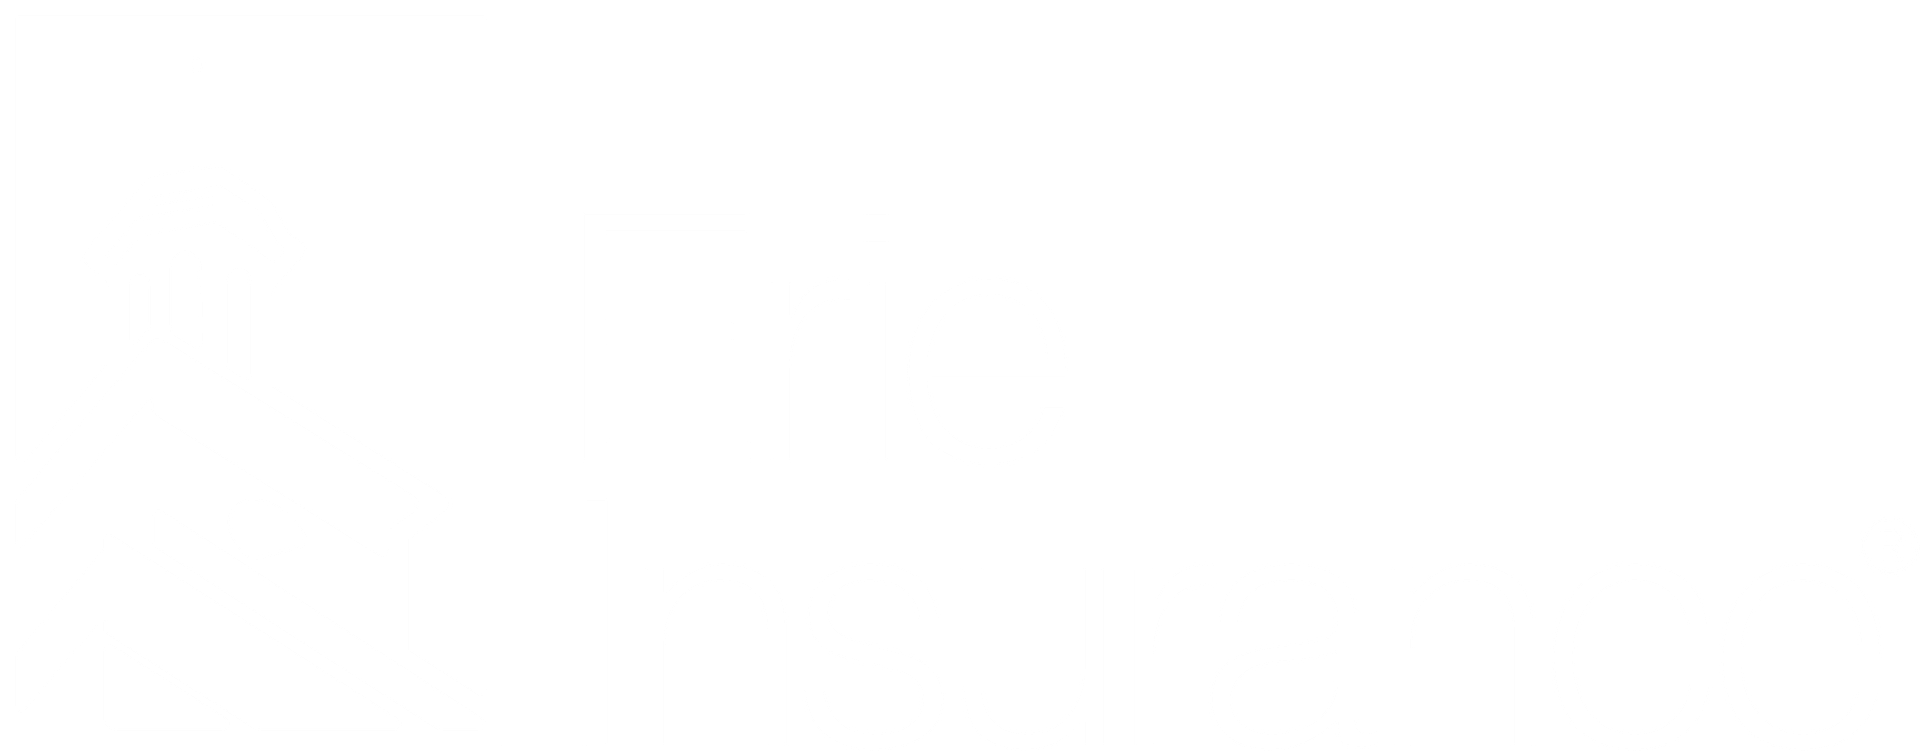 erie-logo-reverse